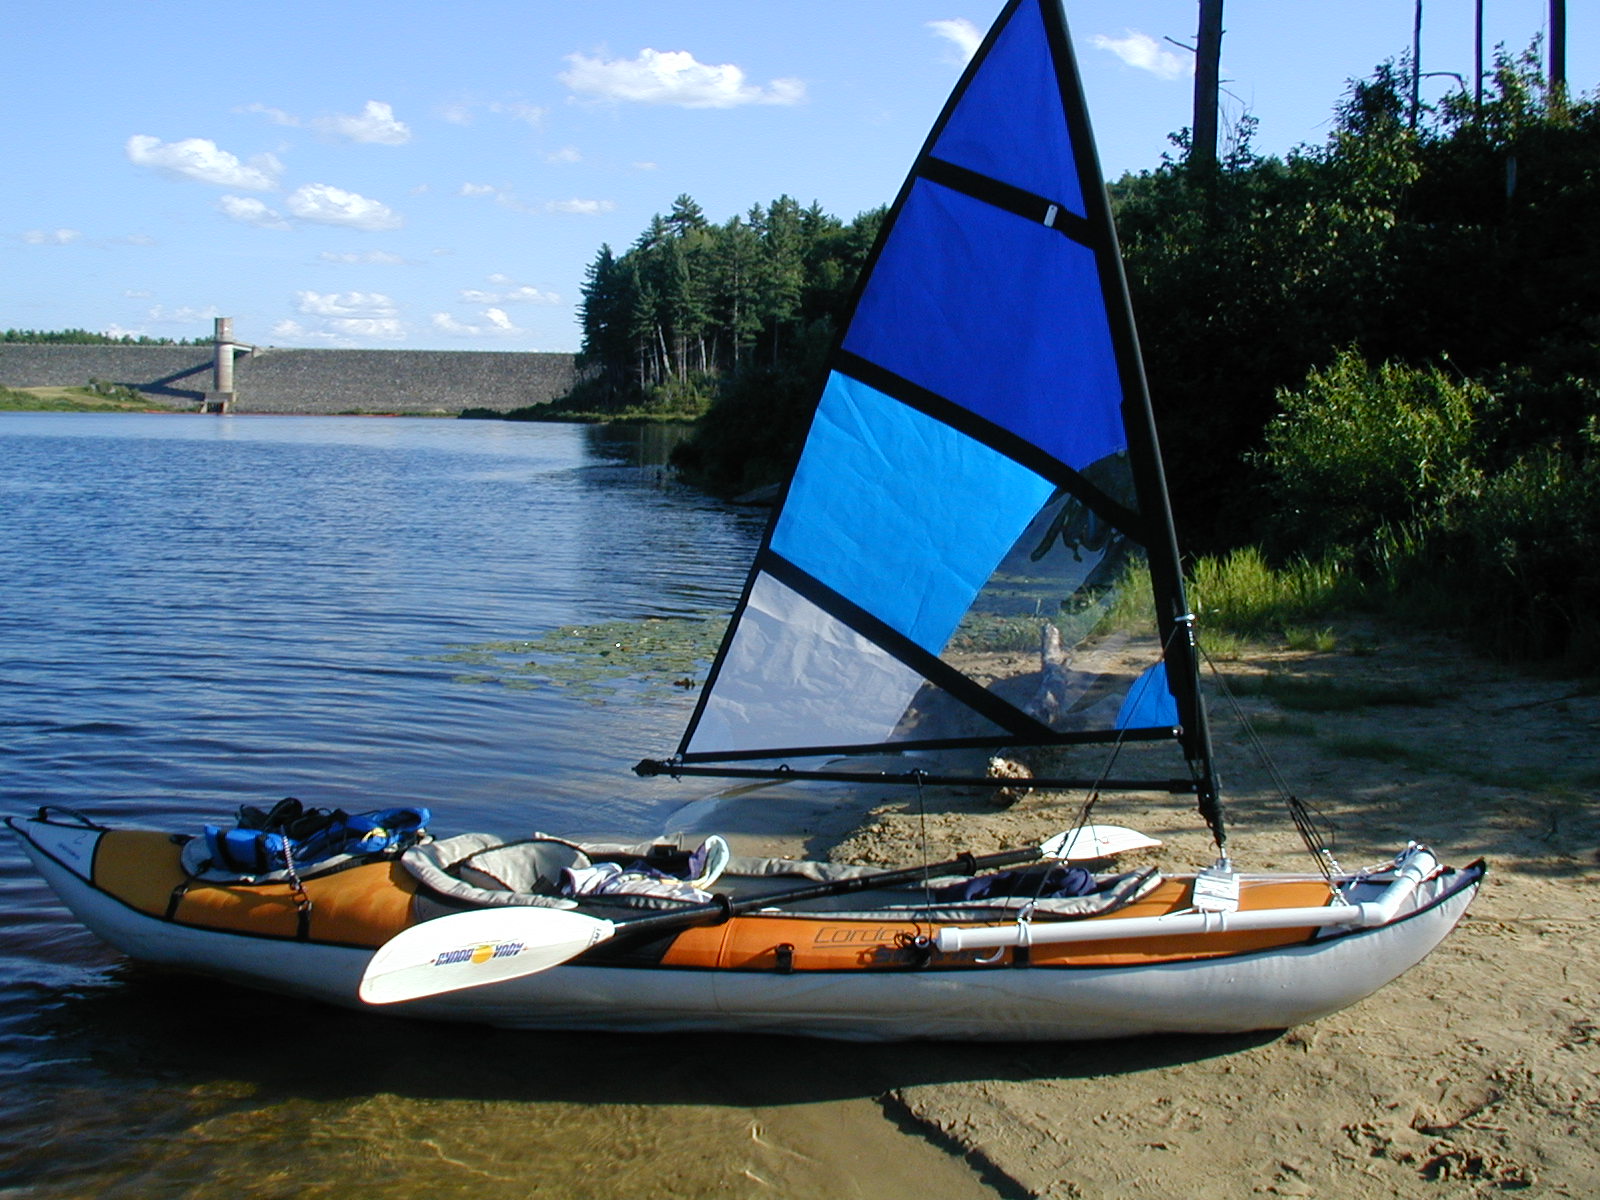 Kayak Sail on a inflateable Kayak